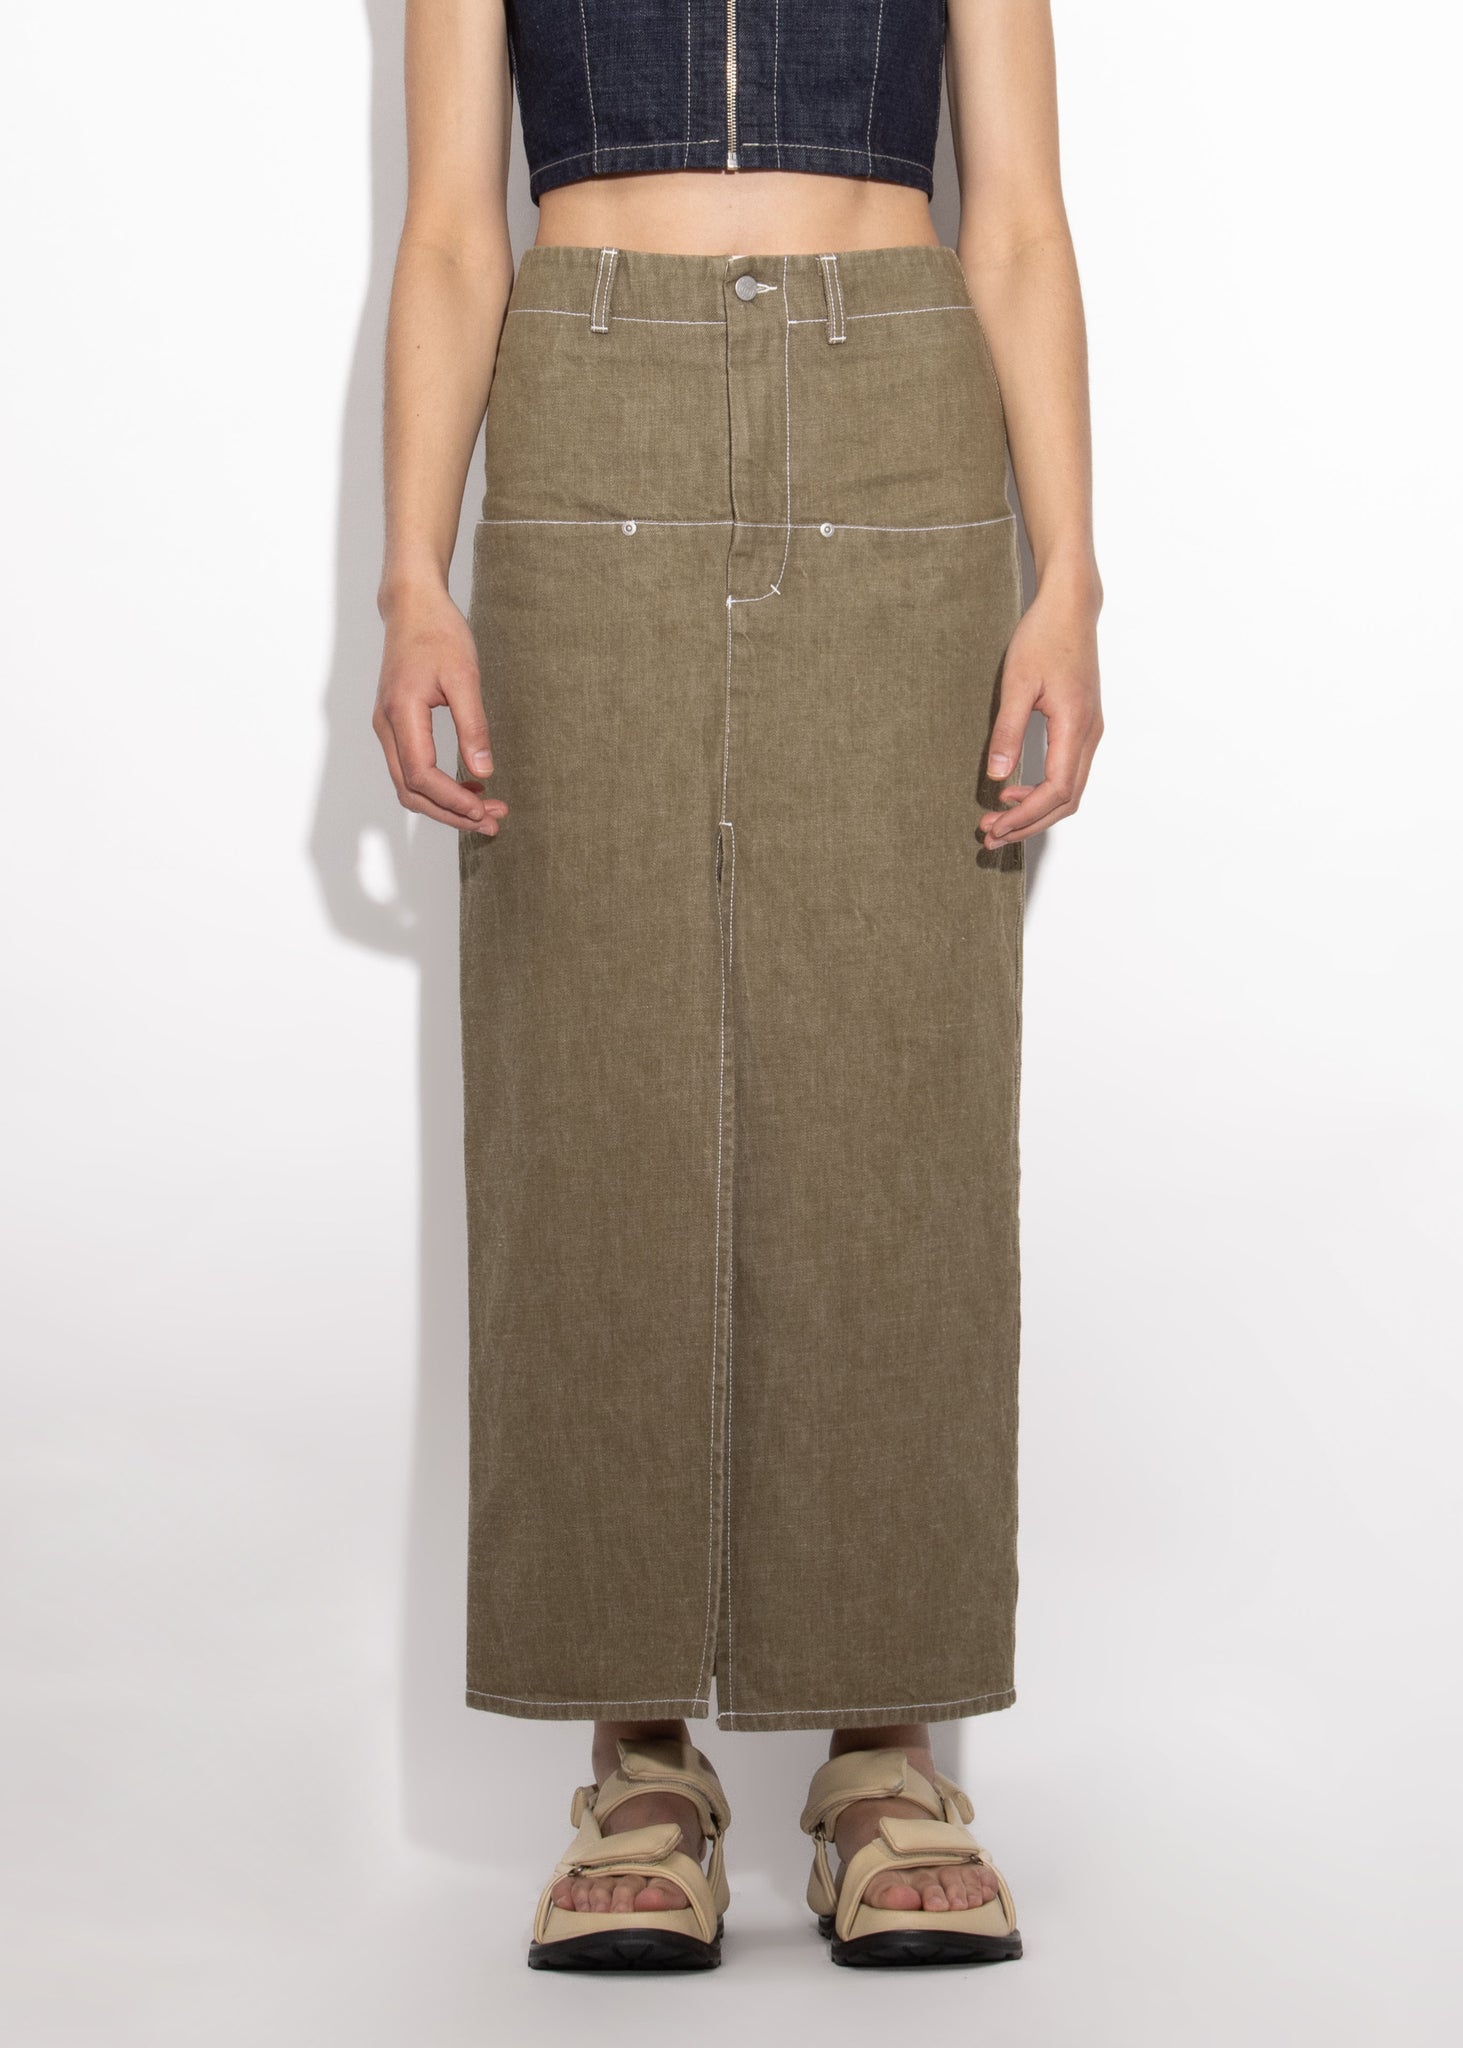 Flatliner Maxi Skirt - Khaki